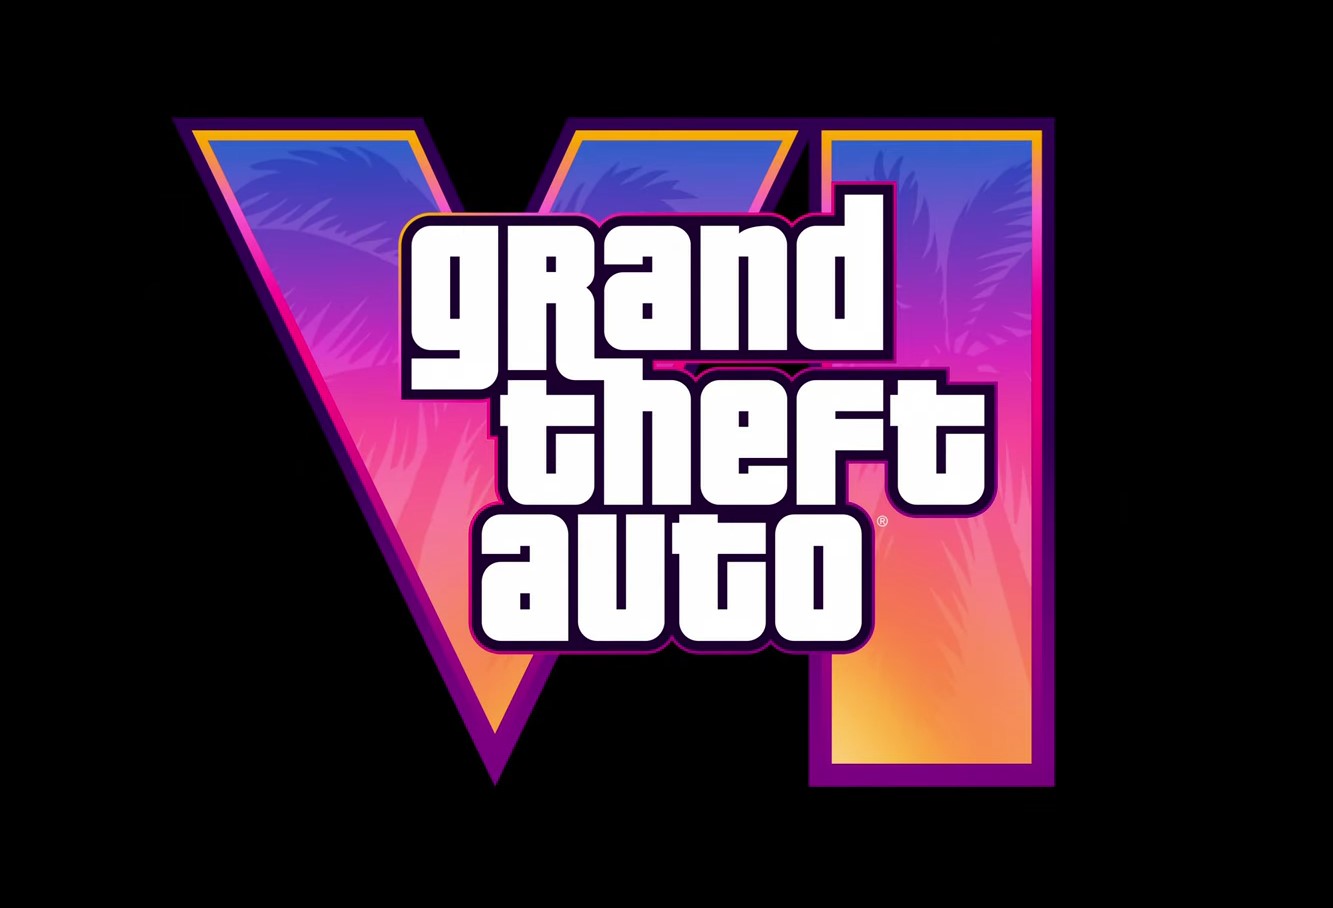 Долгожданная GTA VI: вышел трейлер, названа дата выхода и место действия - первые подробности об игре